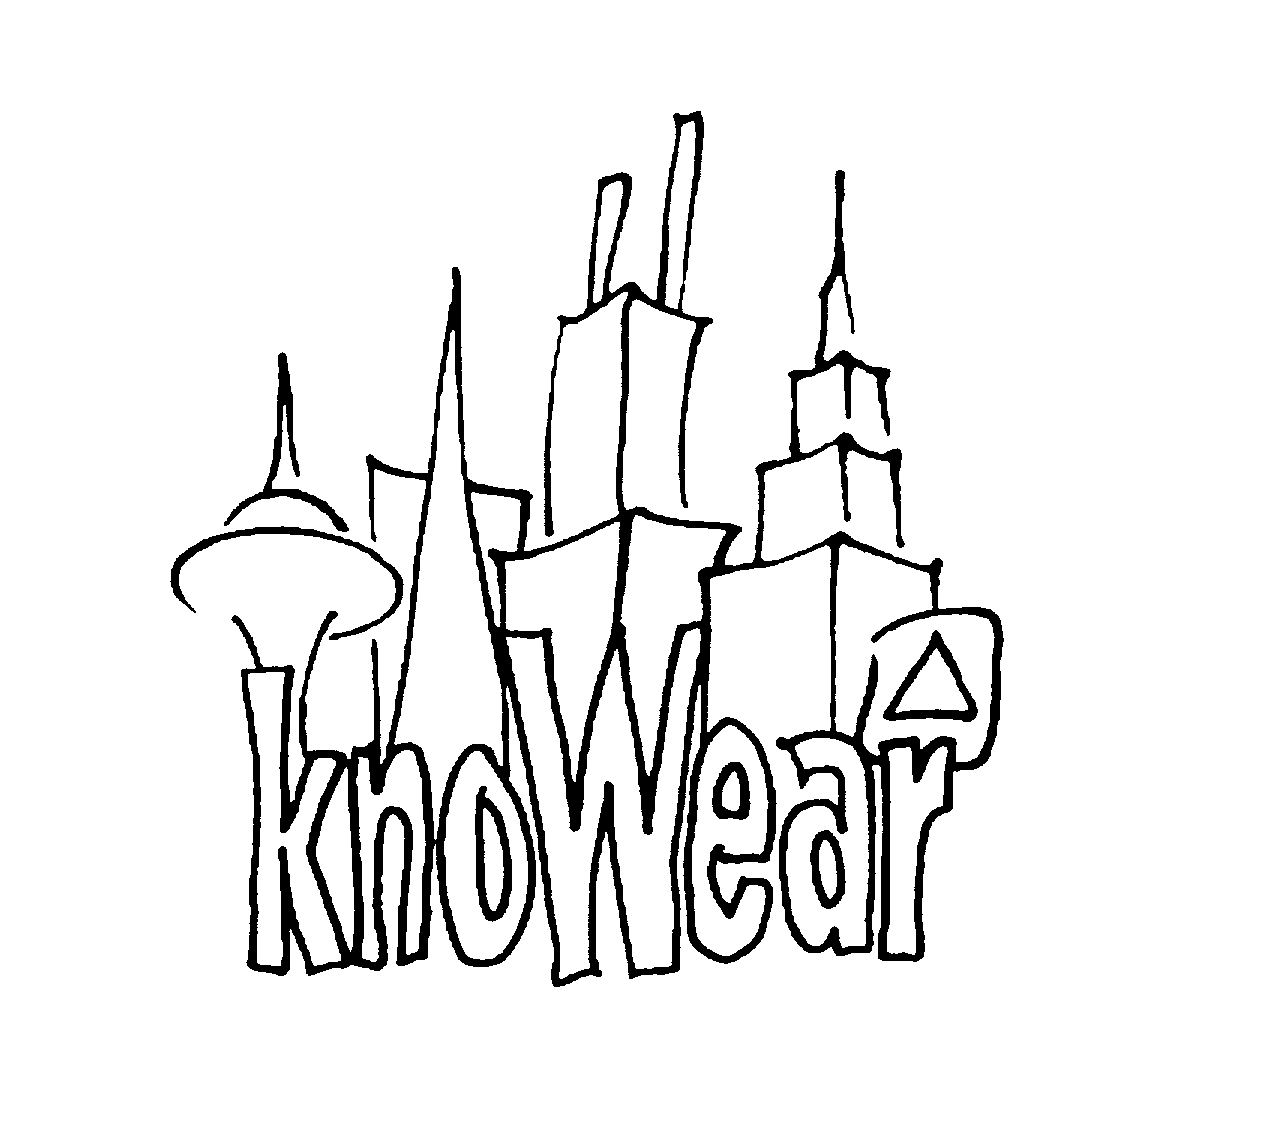 KNOWEAR